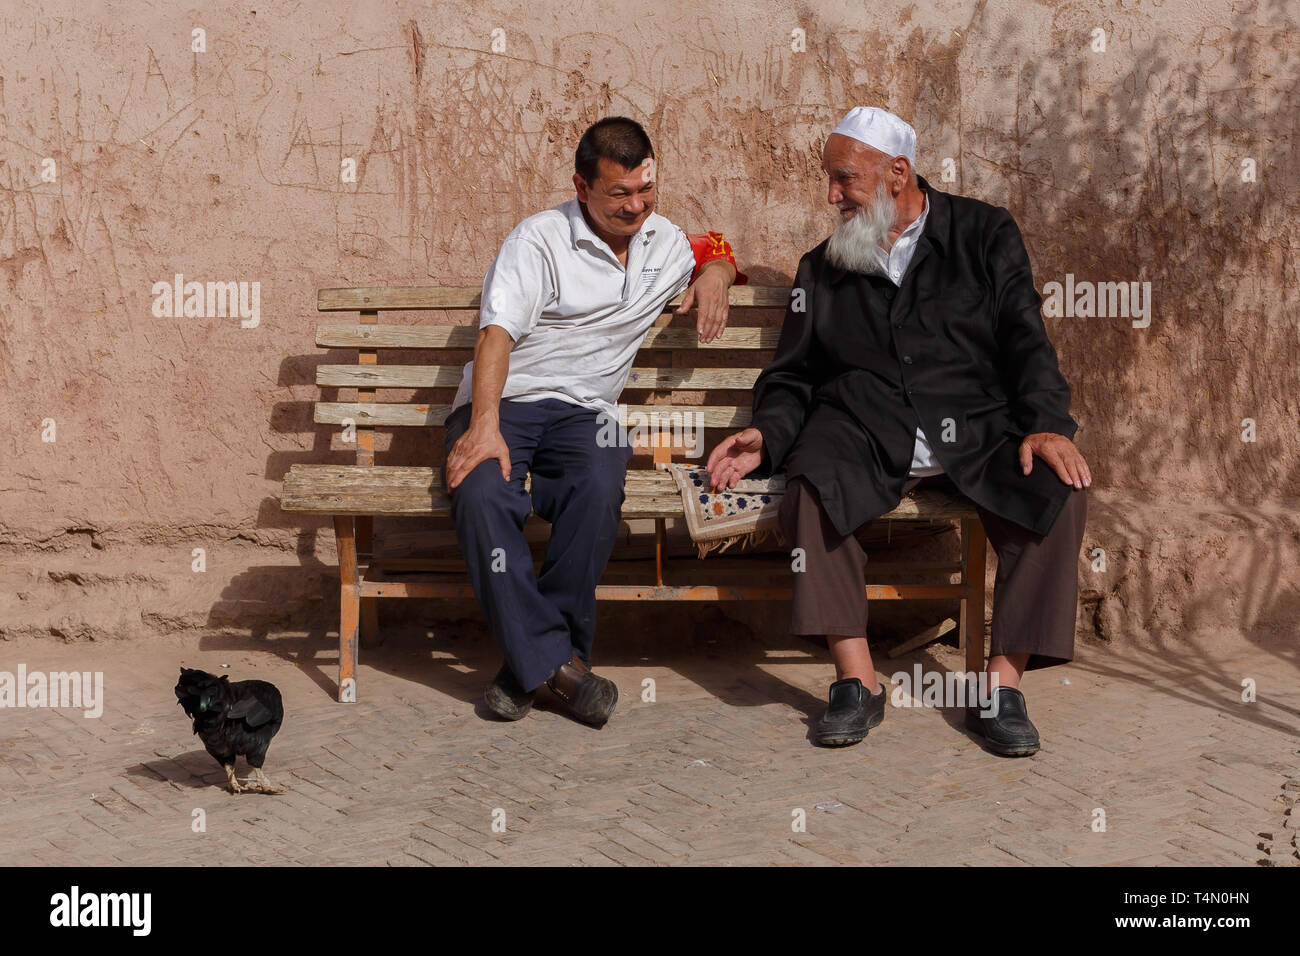 Zwei uigurische Männer ein Gespräch auf einer Bank. Bemerkenswerte Details: das Huhn auf der linken Seite der beiden Herren. Kashgar, Provinz Xinjiang, China. Stockfoto